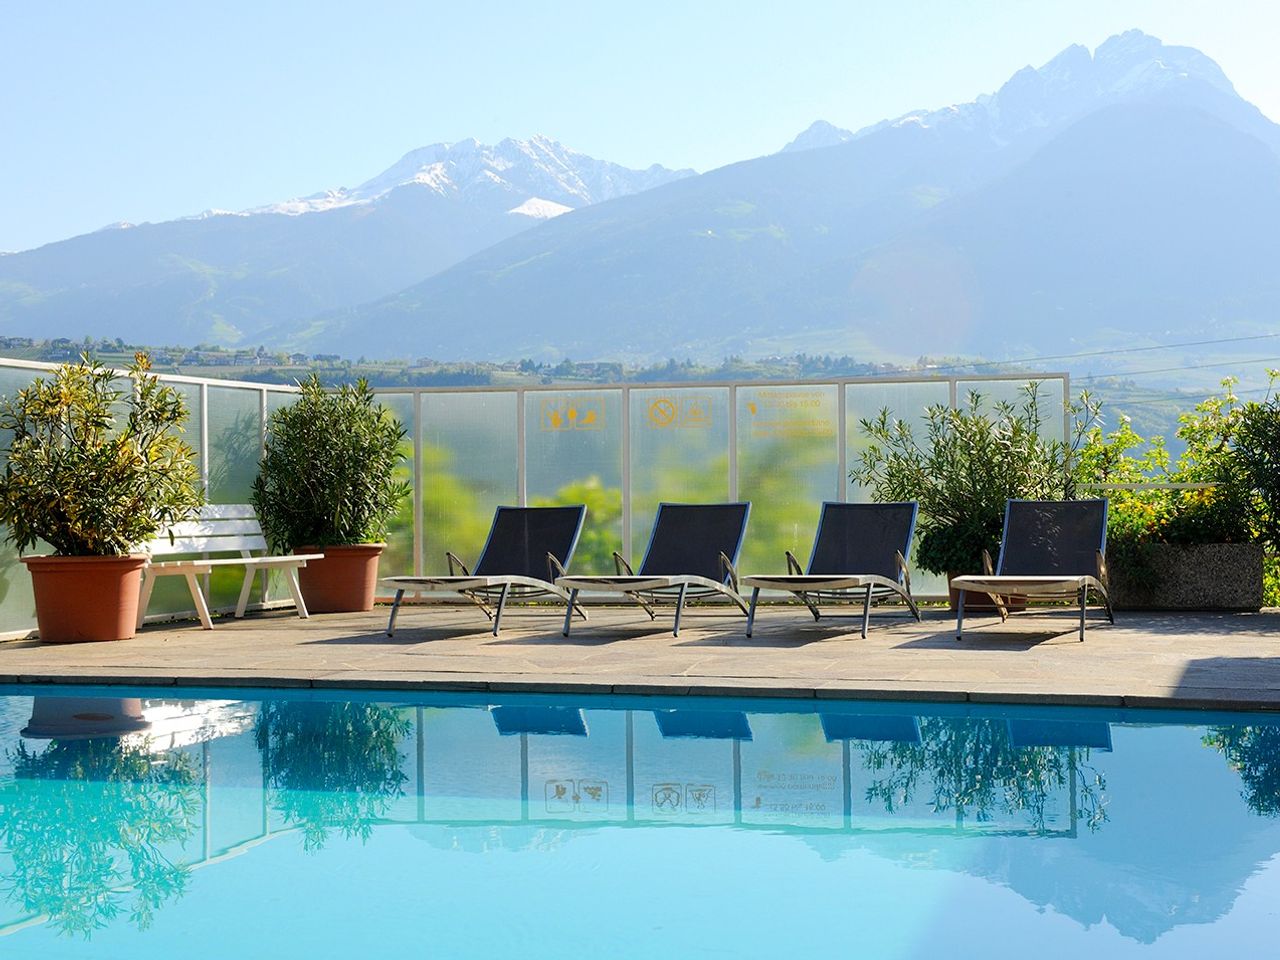 4 Tage Biken, genießen und entspannen in Südtirol